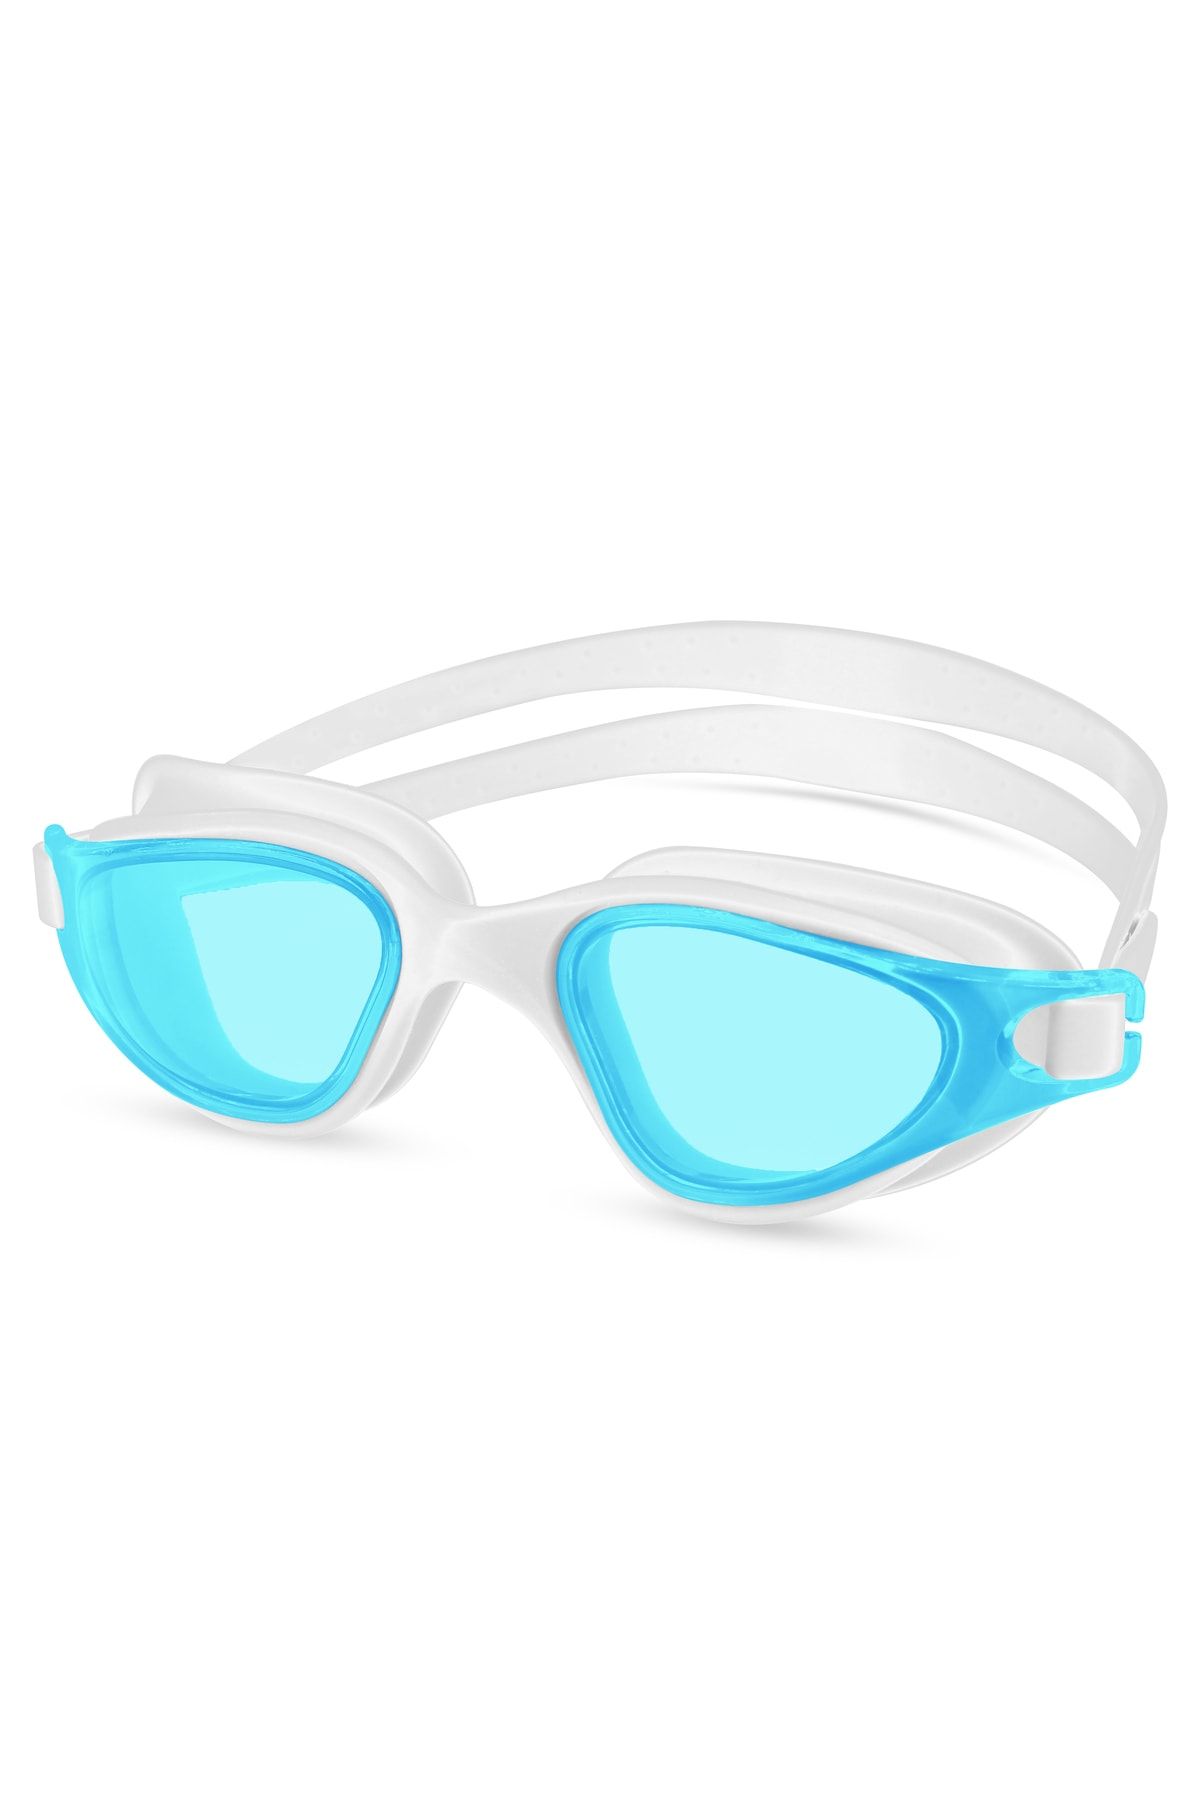 Telvesse Yüzücü Gözlüğü Swimmer Buğu Yapmaz Vakumlu Uv Korumalı Yüzme Havuz Deniz Gözlüğü Turkuaz